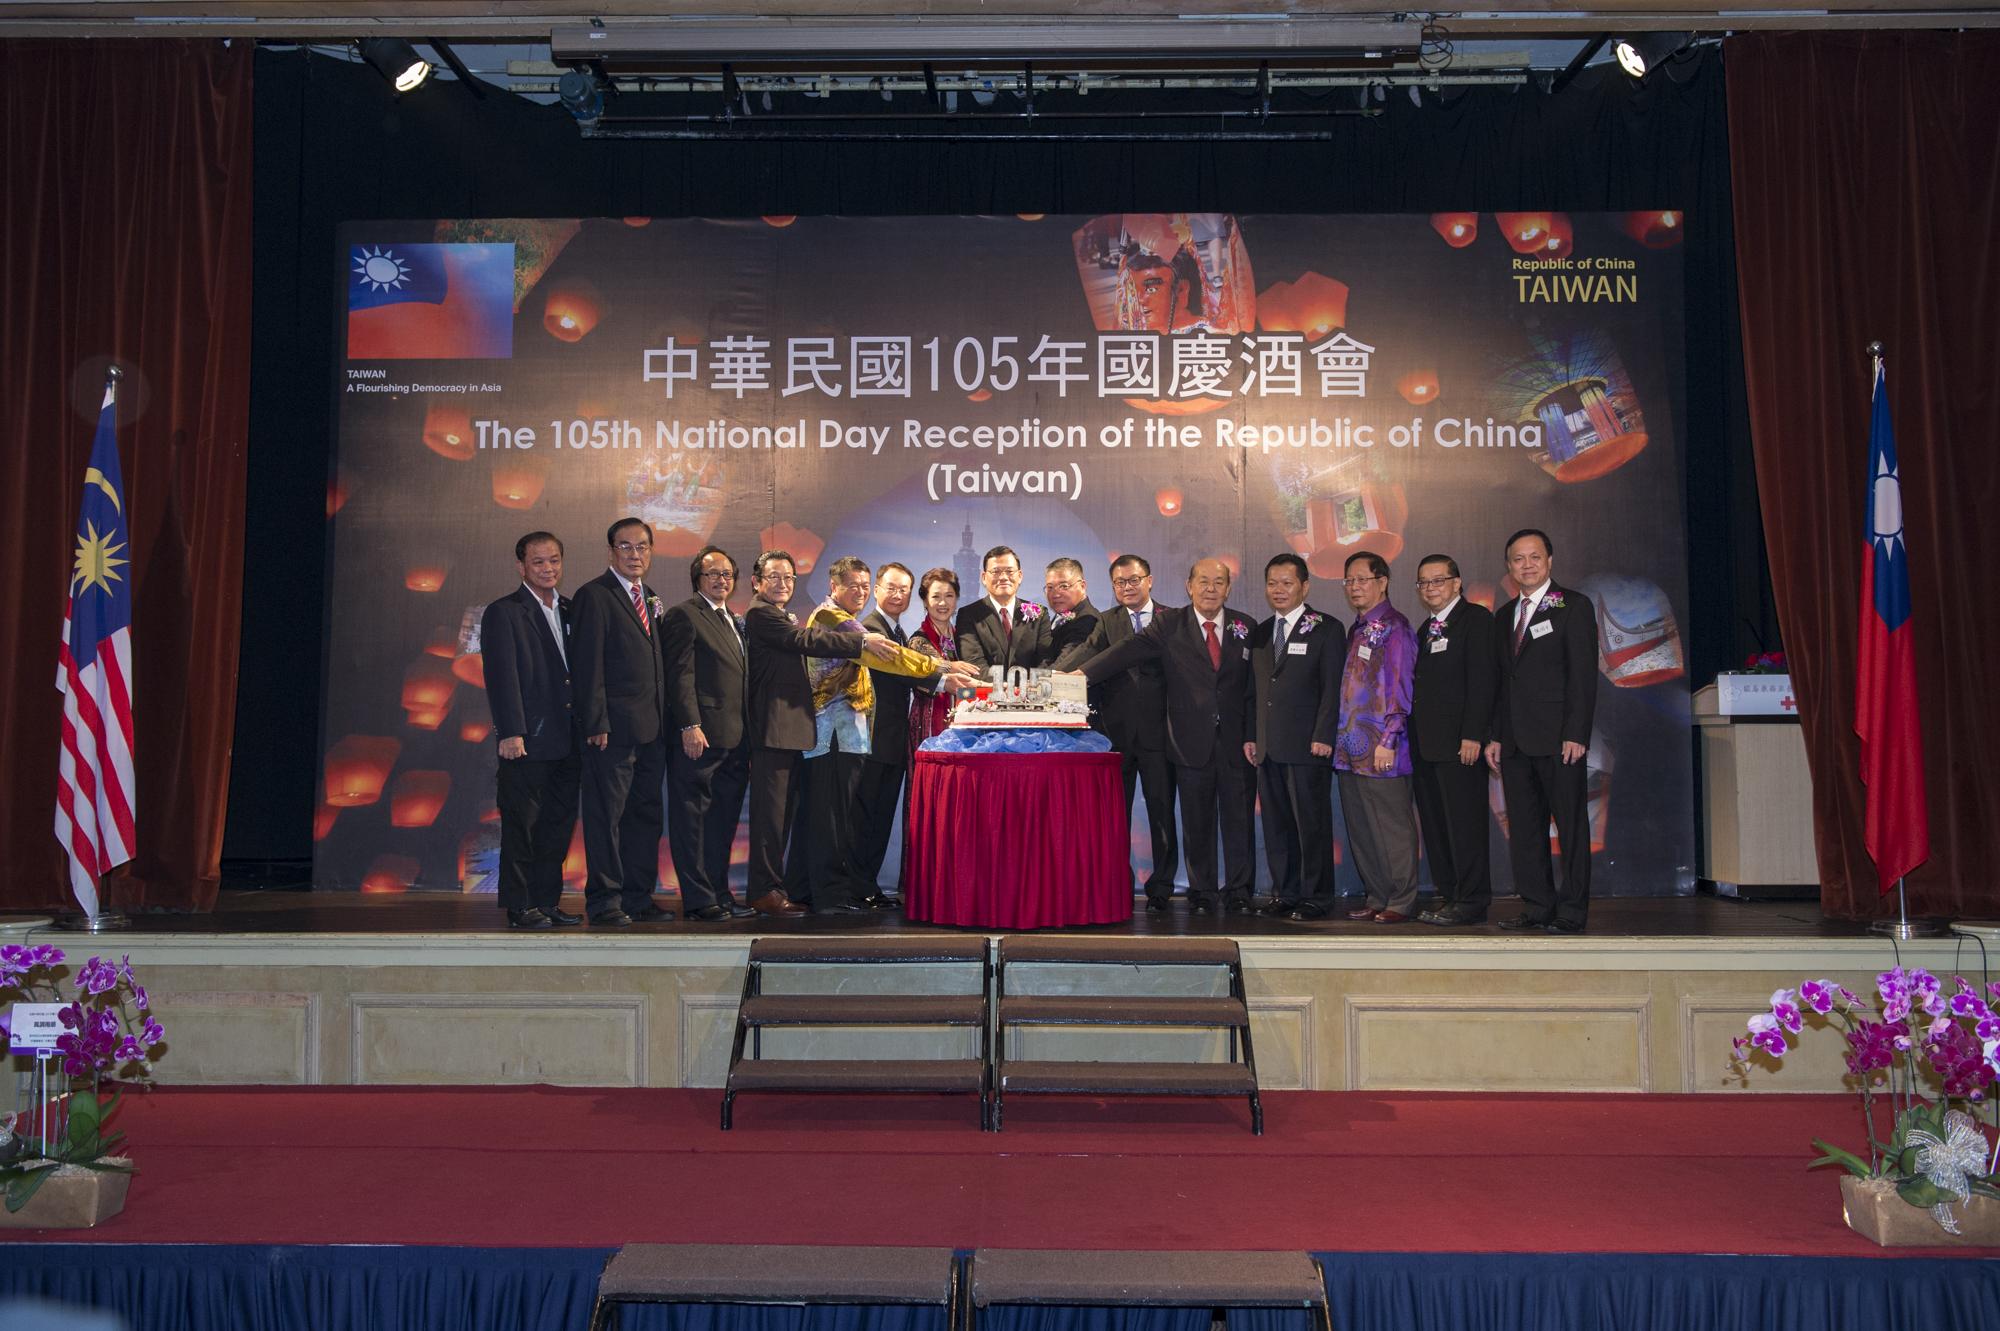 駐馬來西亞代表處章大使計平主持105年國慶酒會，並邀請當地政要、台商、華團領袖等15人共同祝酒及進行切蛋糕儀式，祝賀中華民國生日快樂。